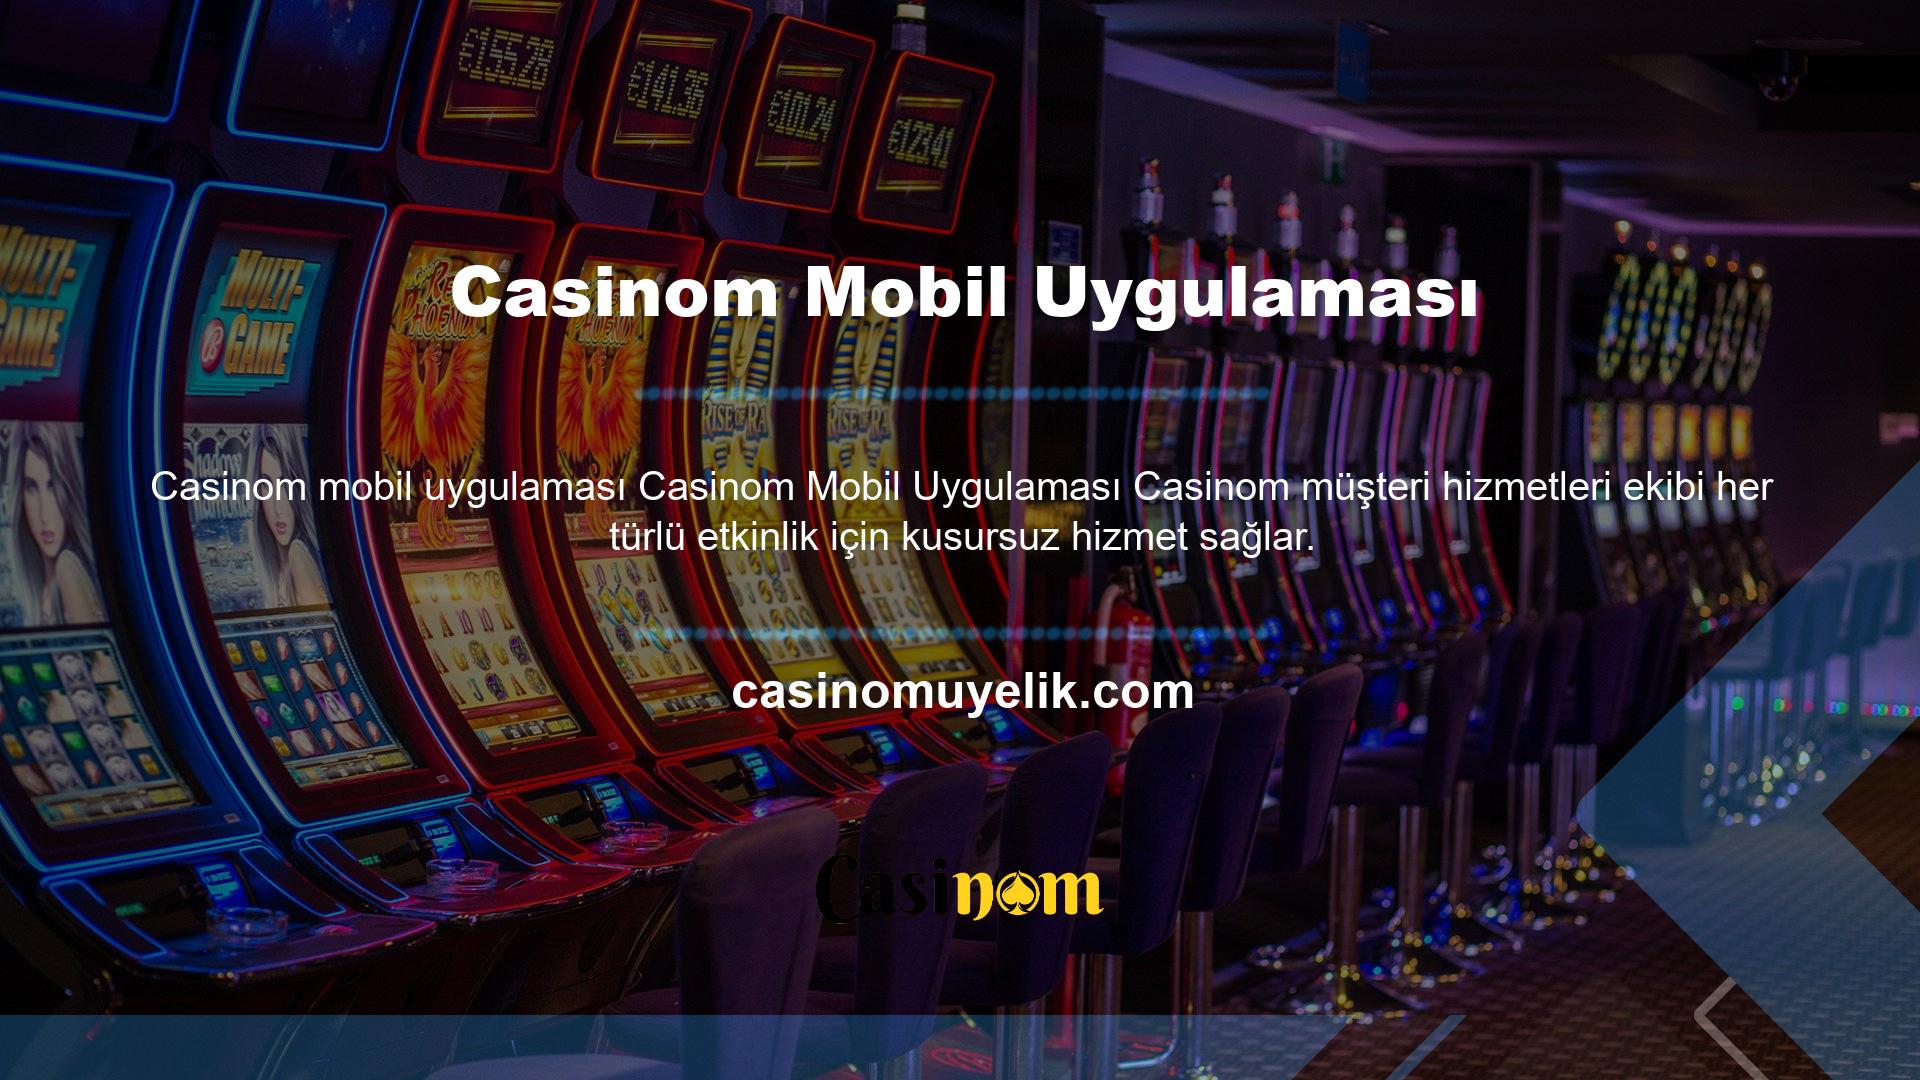 Casinom web sitesi birçok çevrimiçi casino sever için iyi bir seçim olsa da, 24 saat destek eksikliği, özellikle farklı saat dilimlerindeki casino kullanıcıları için bir dezavantaj olabilir